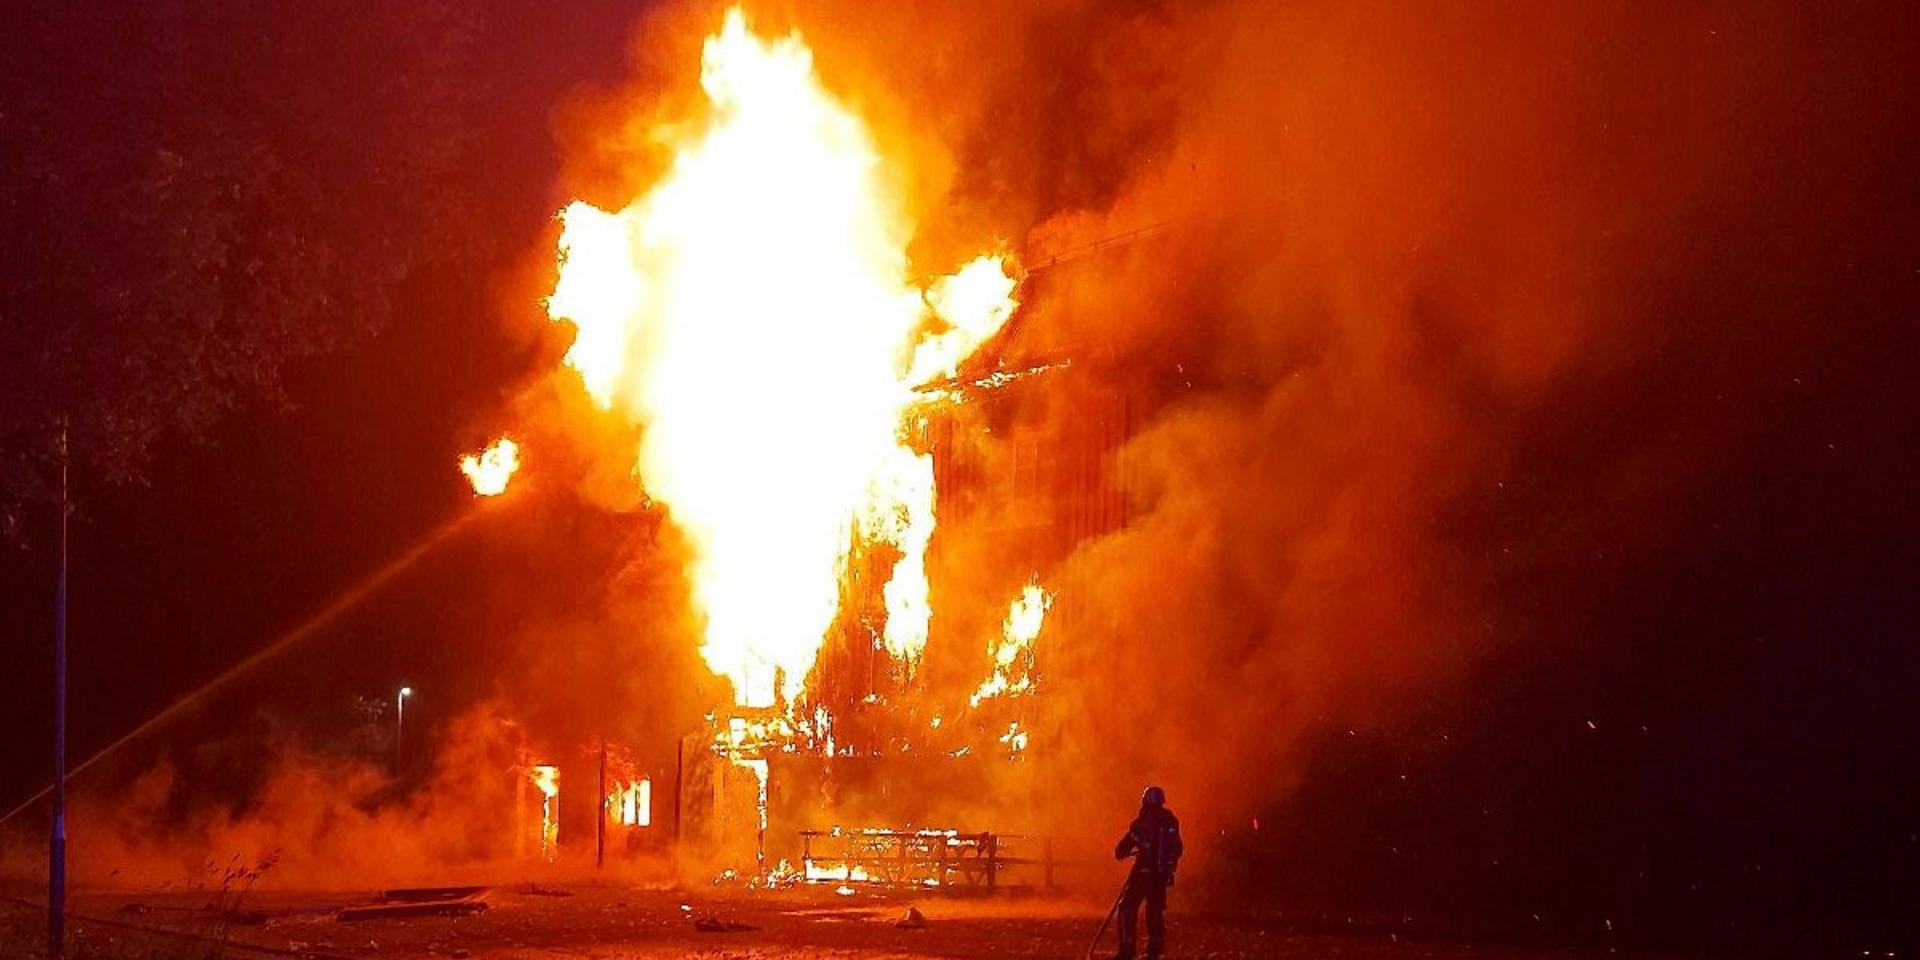 Folkets hus i Mörsil mellan Åre och Östersund totalförstördes vid en brand natten till fredagen. Byggnaden var helt övertänd när räddningstjänsten anlände.